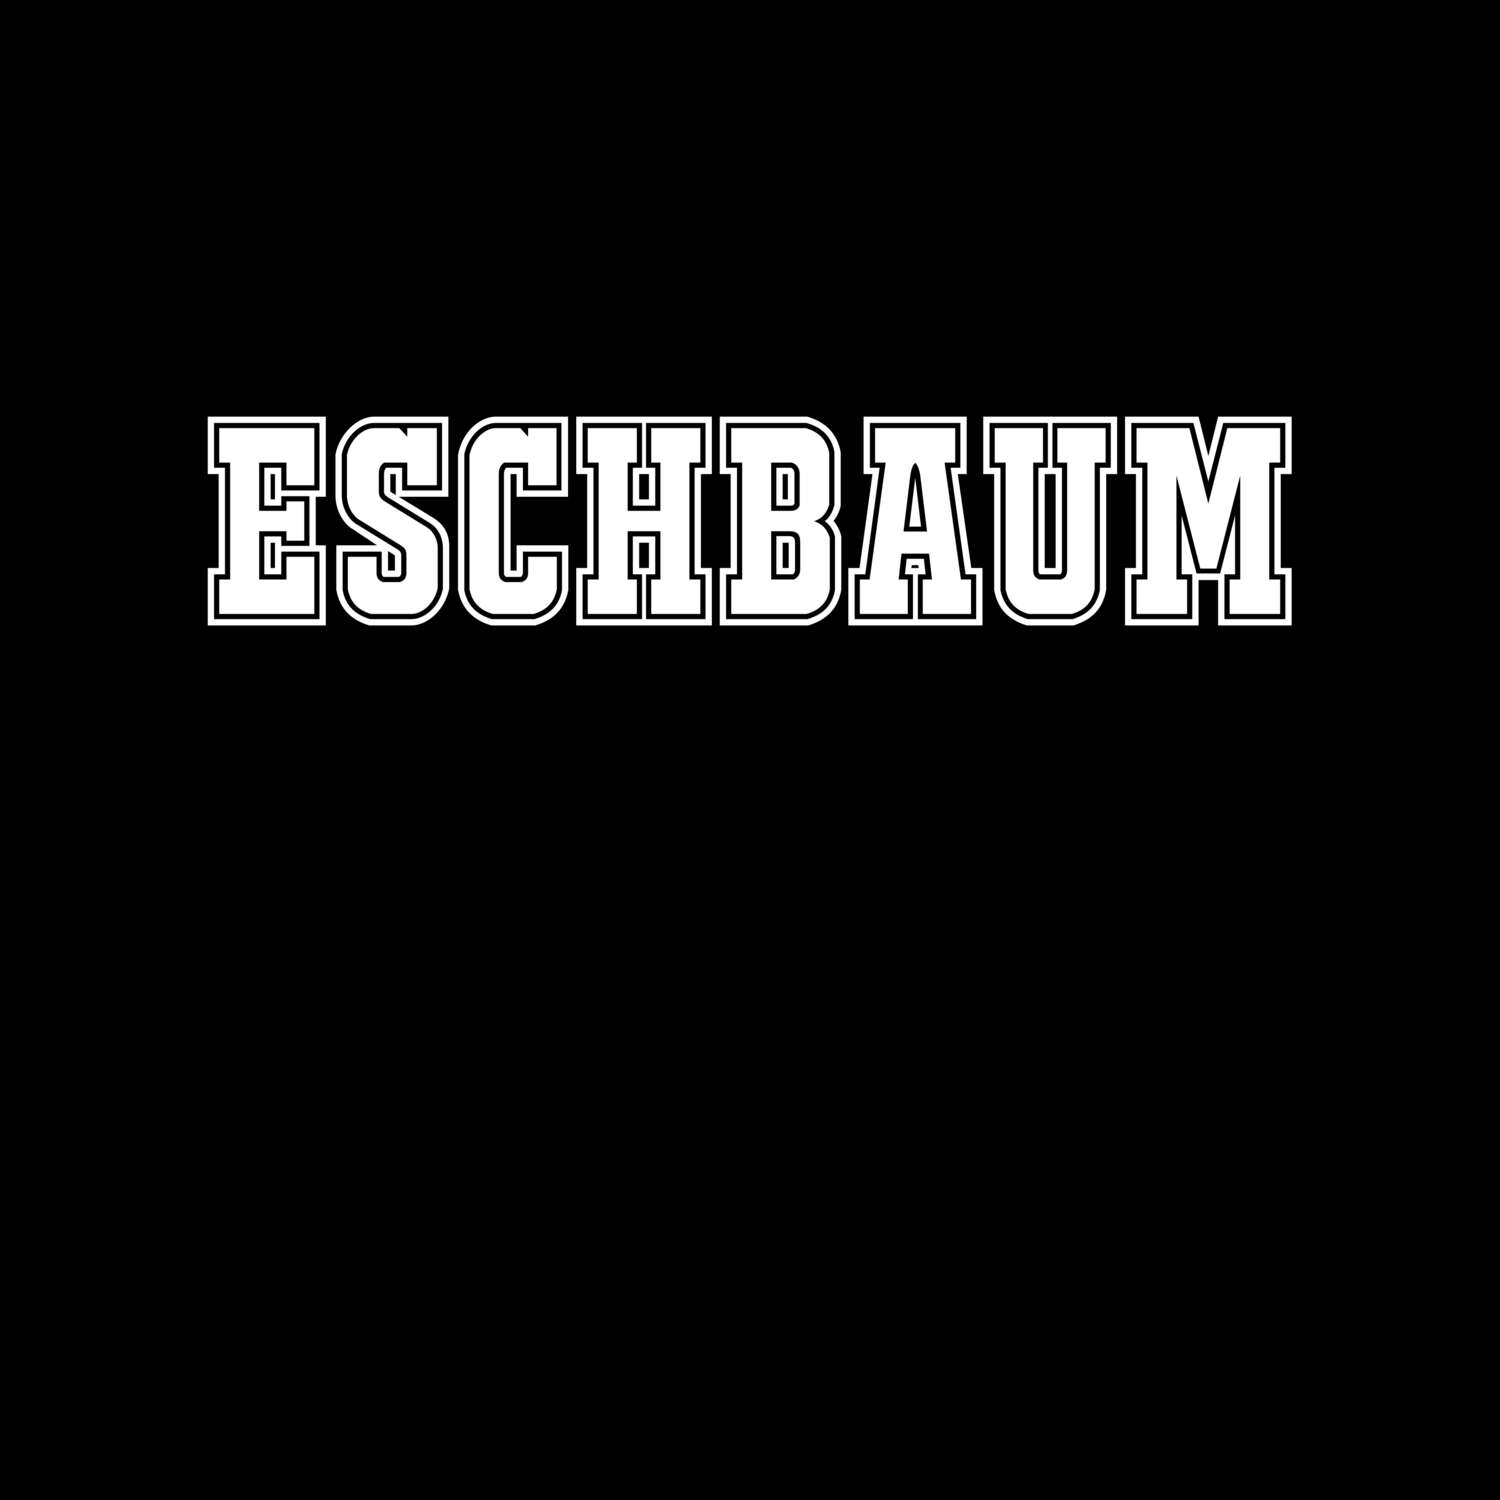 Eschbaum T-Shirt »Classic«